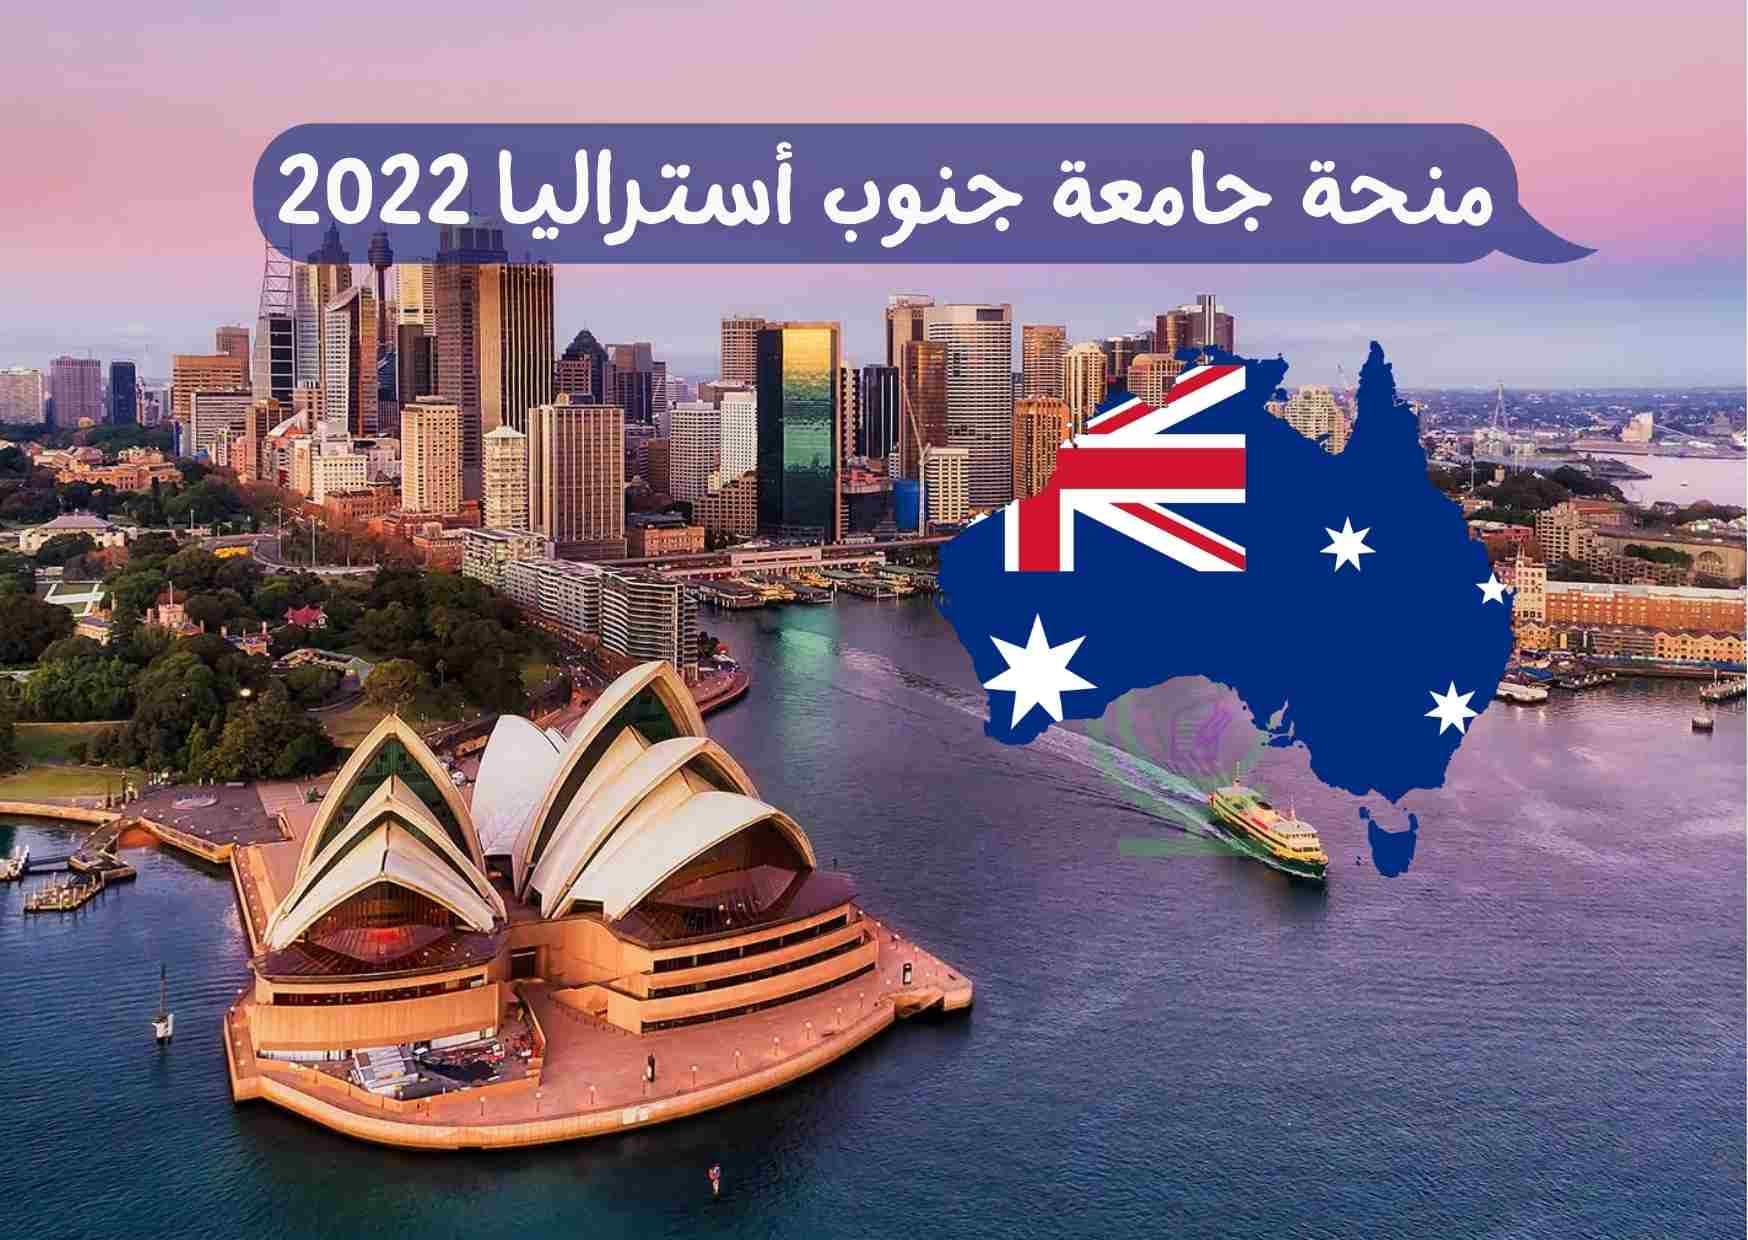  منحة جامعة جنوب أستراليا 2022 ممولة بالكامل 